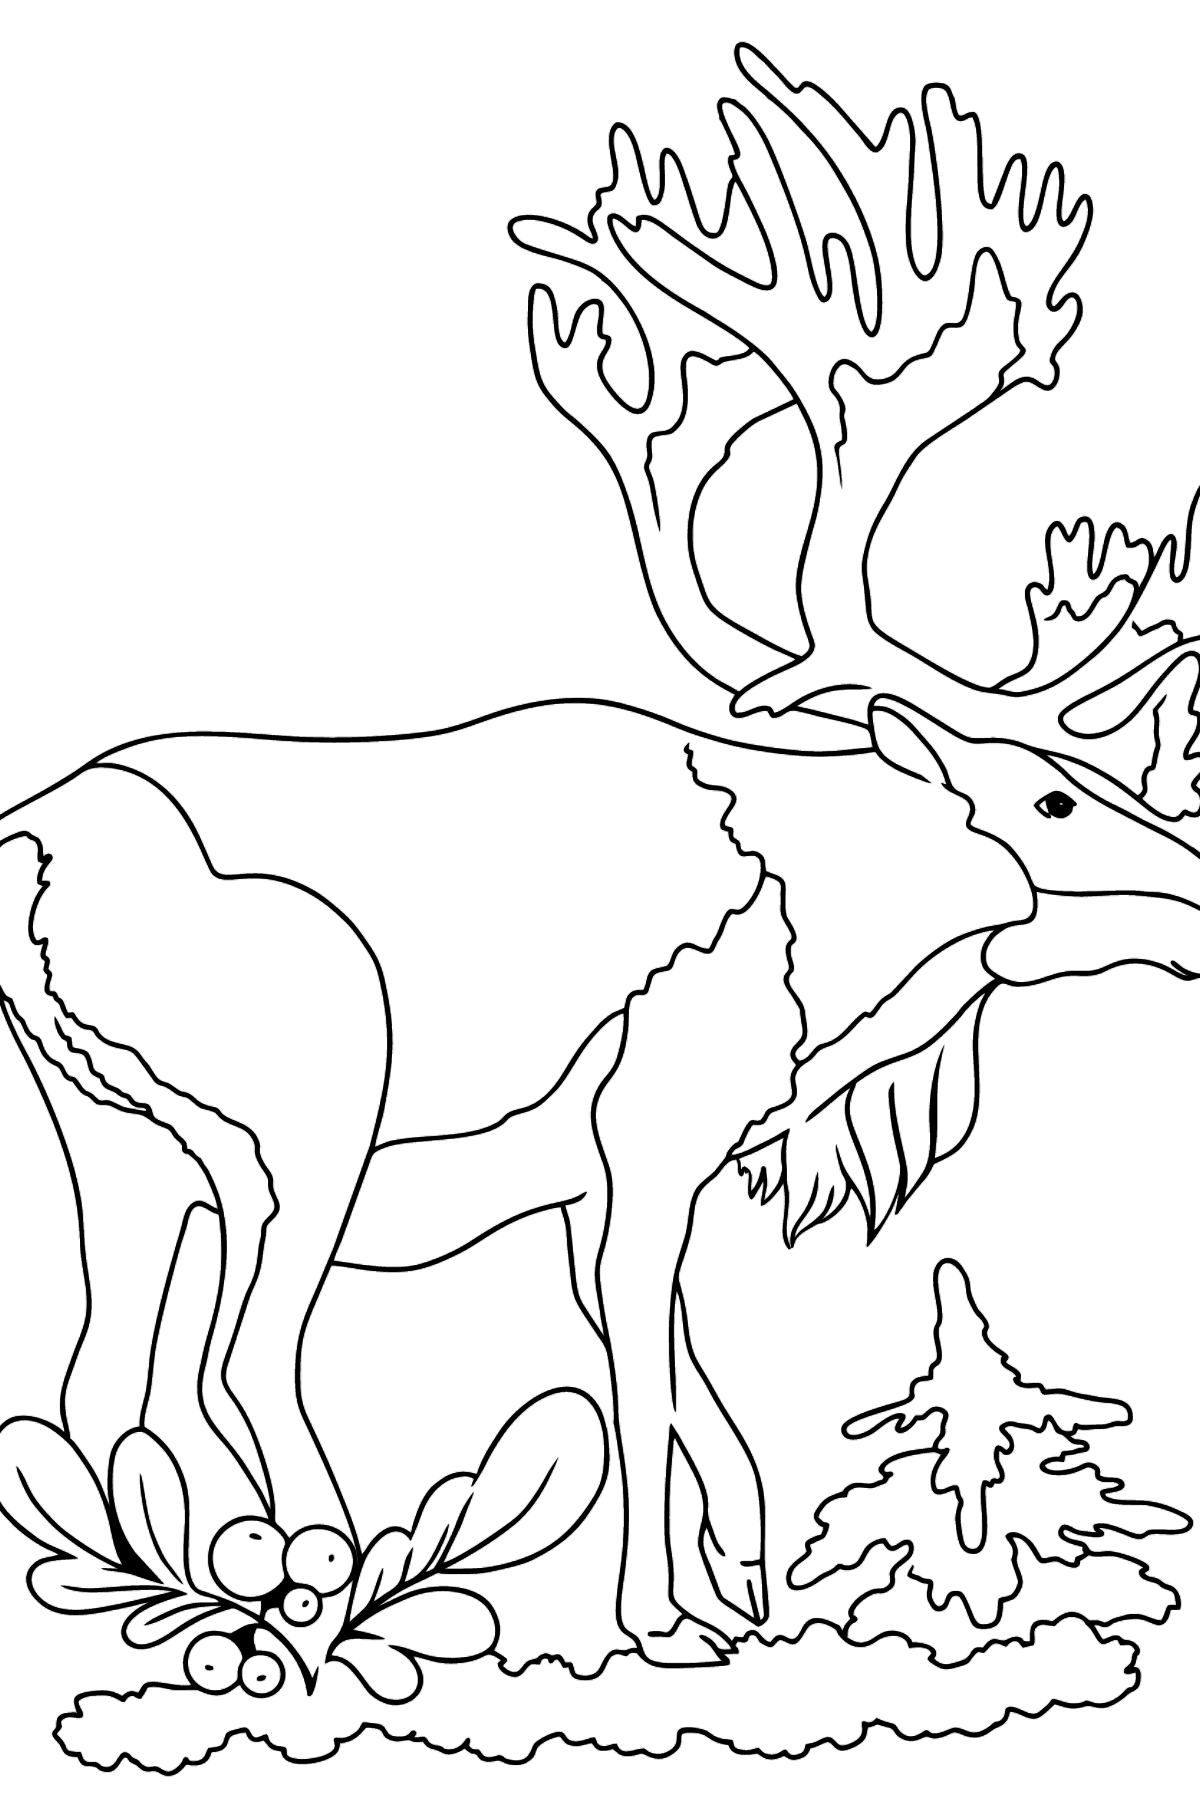 Tegning til fargelegging hjort for barn - Tegninger til fargelegging for barn